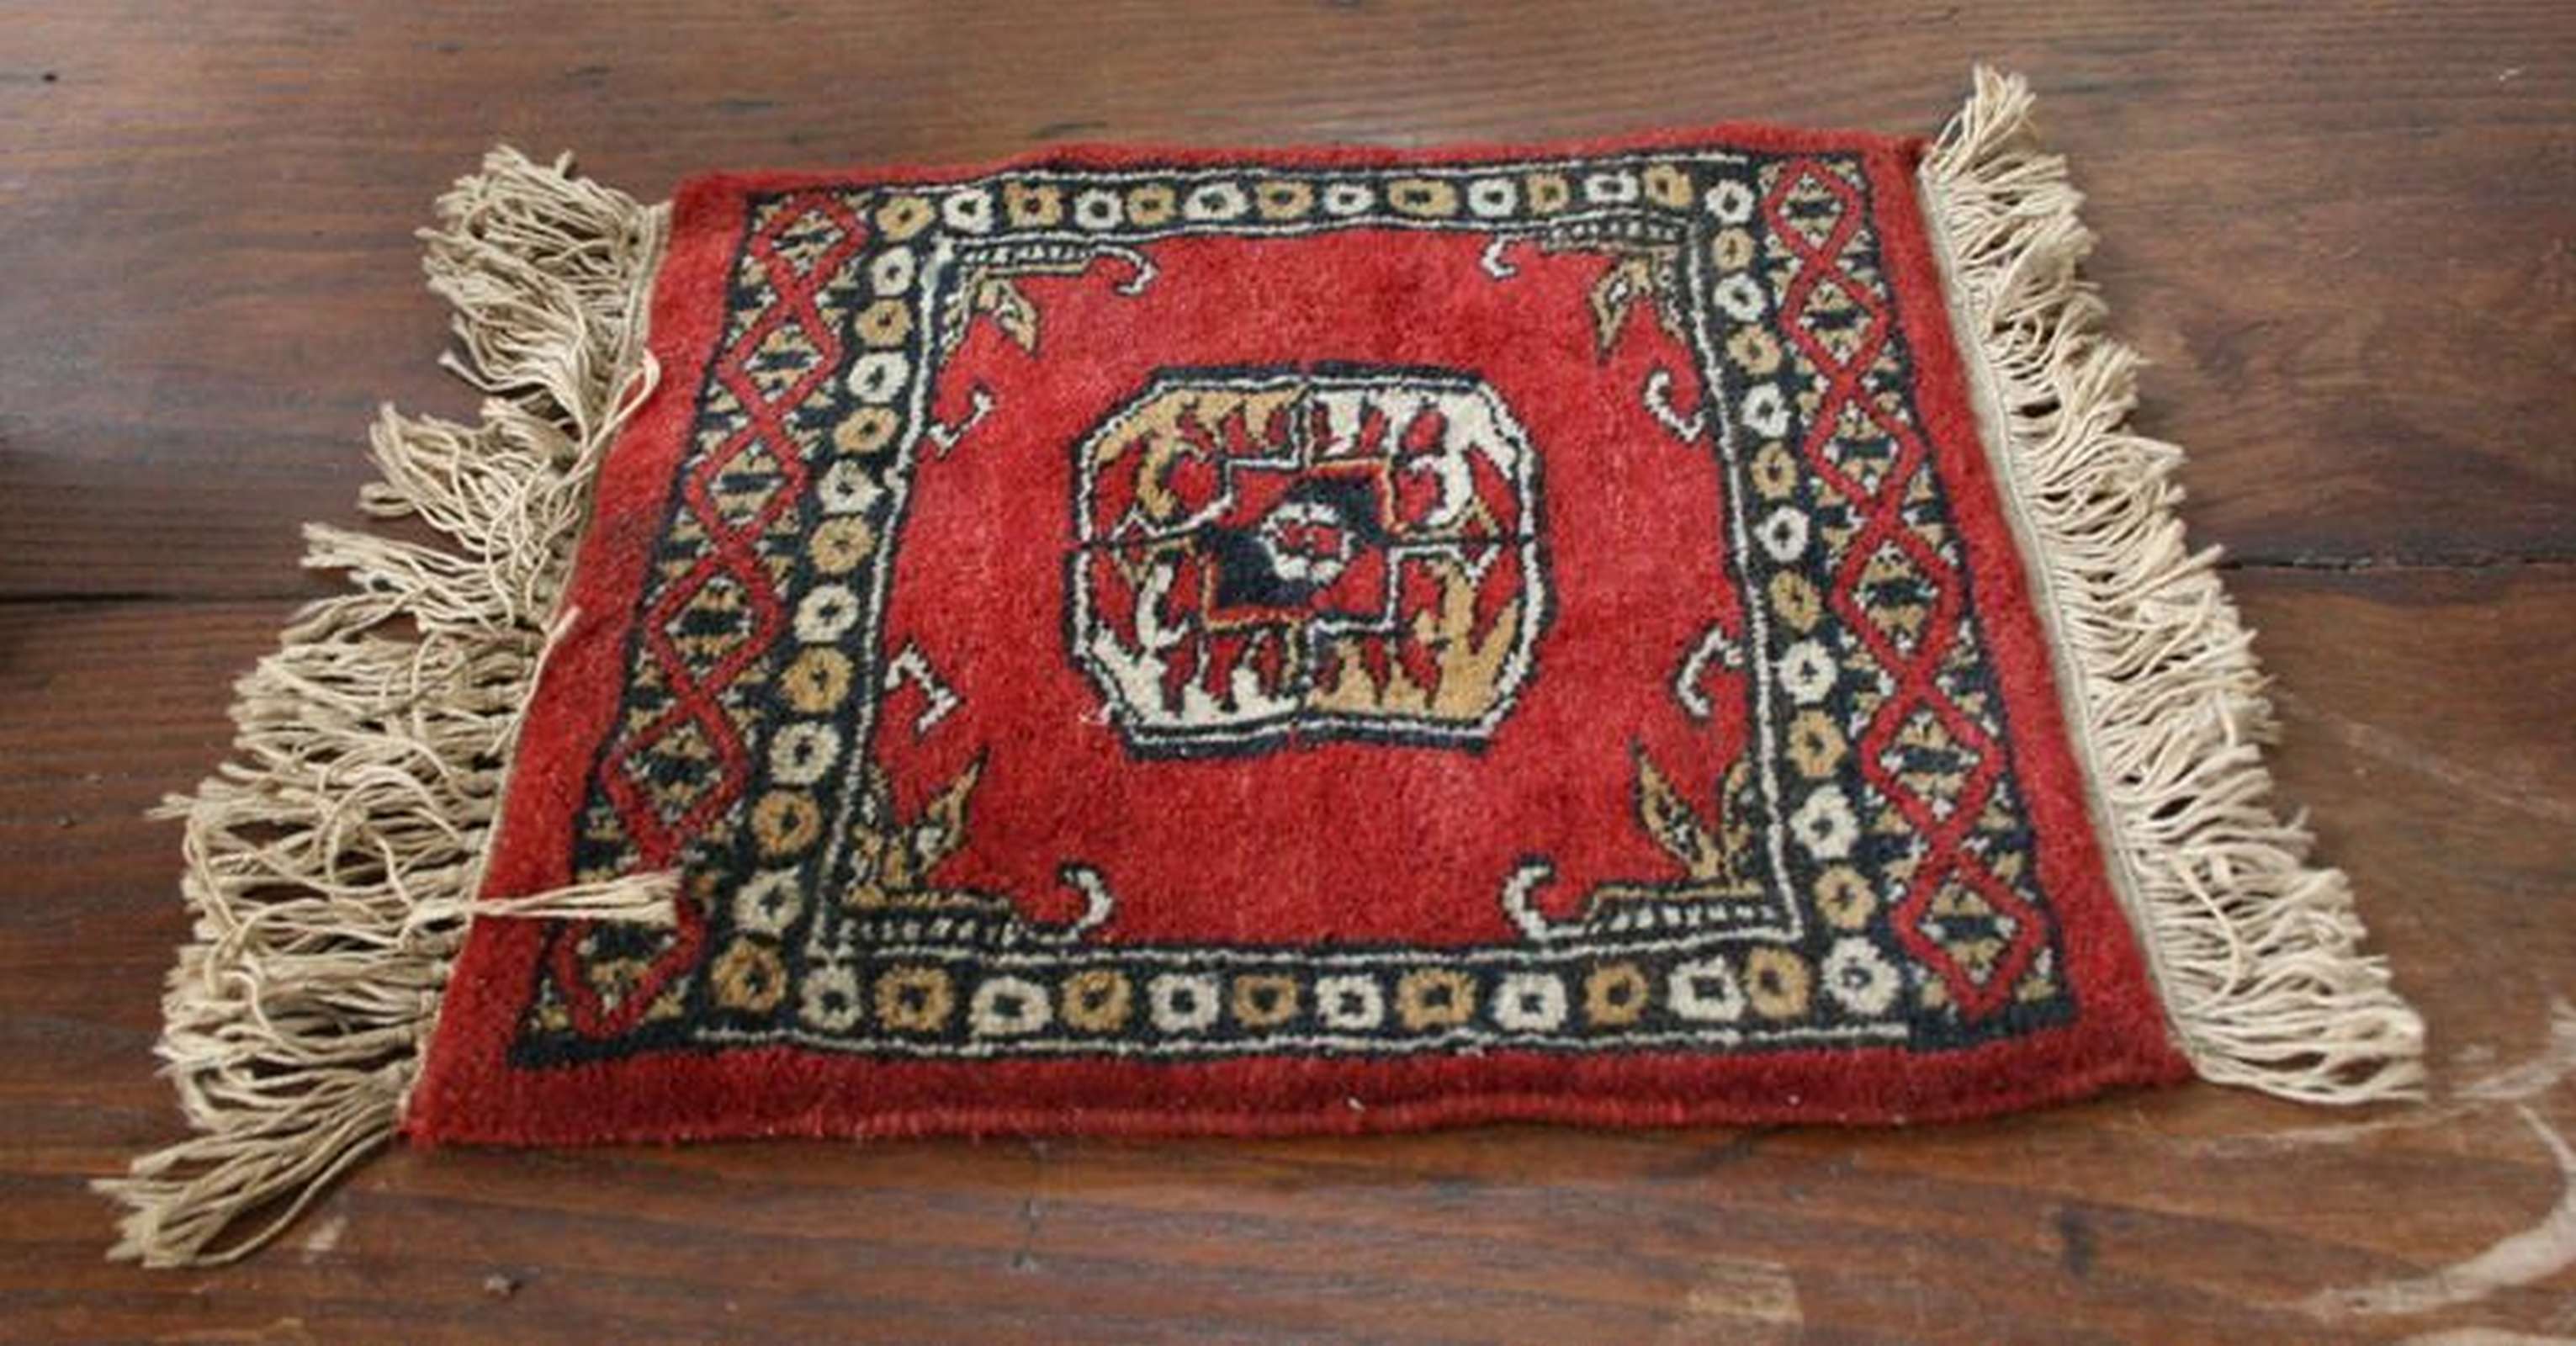 Piccolo tappeto antico - Oggettistica - Oggettistica - Prodotti - Antichità Fiorillo